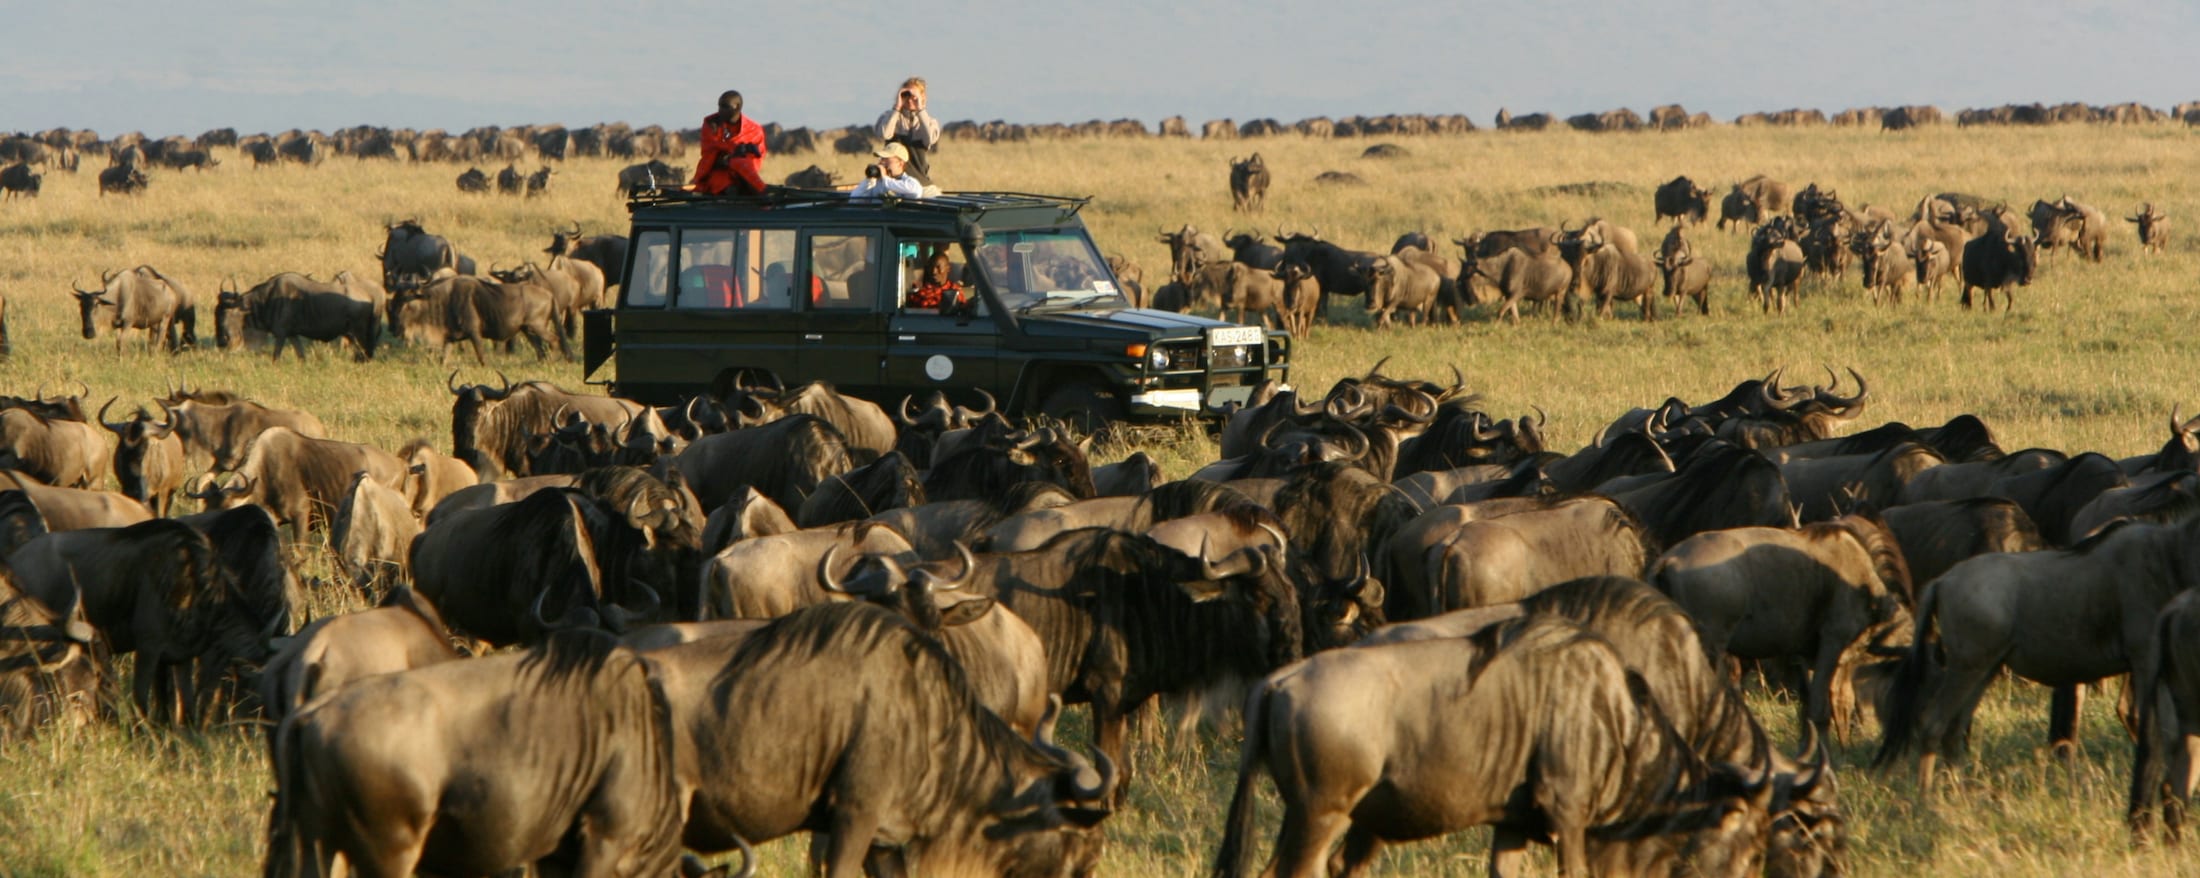 Masai Mara Safari Best Kenya Safari Experiences Art Of Safari